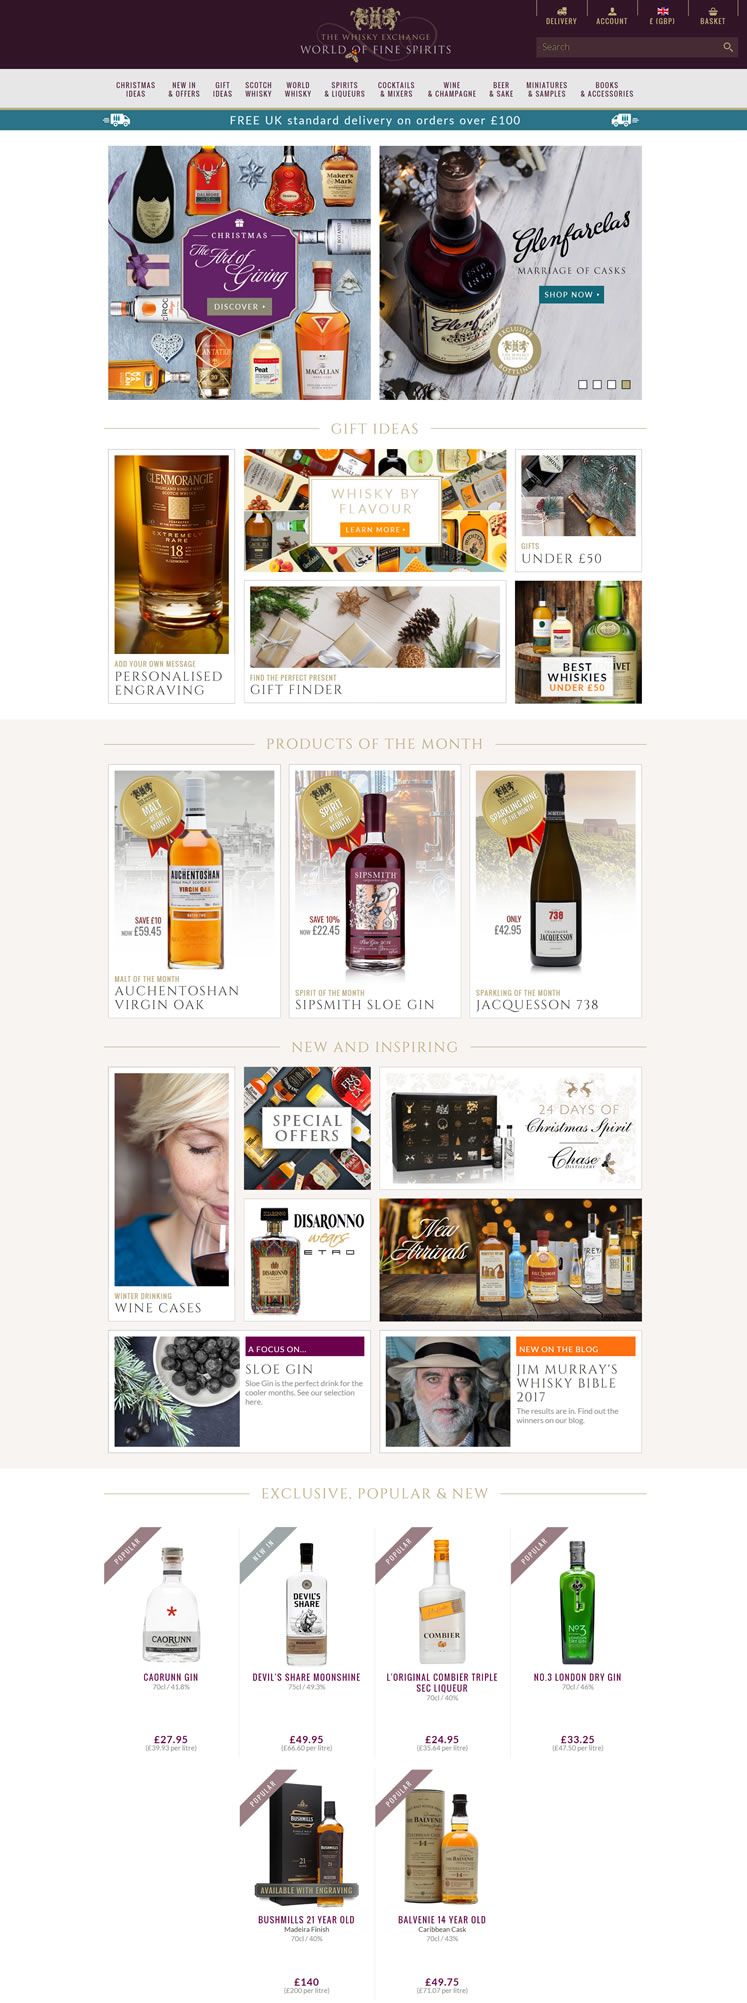 世界上最好的威士忌和烈性酒購買網站：The Whisky Exchange 英國購物網站 MeetKK-MeetKK